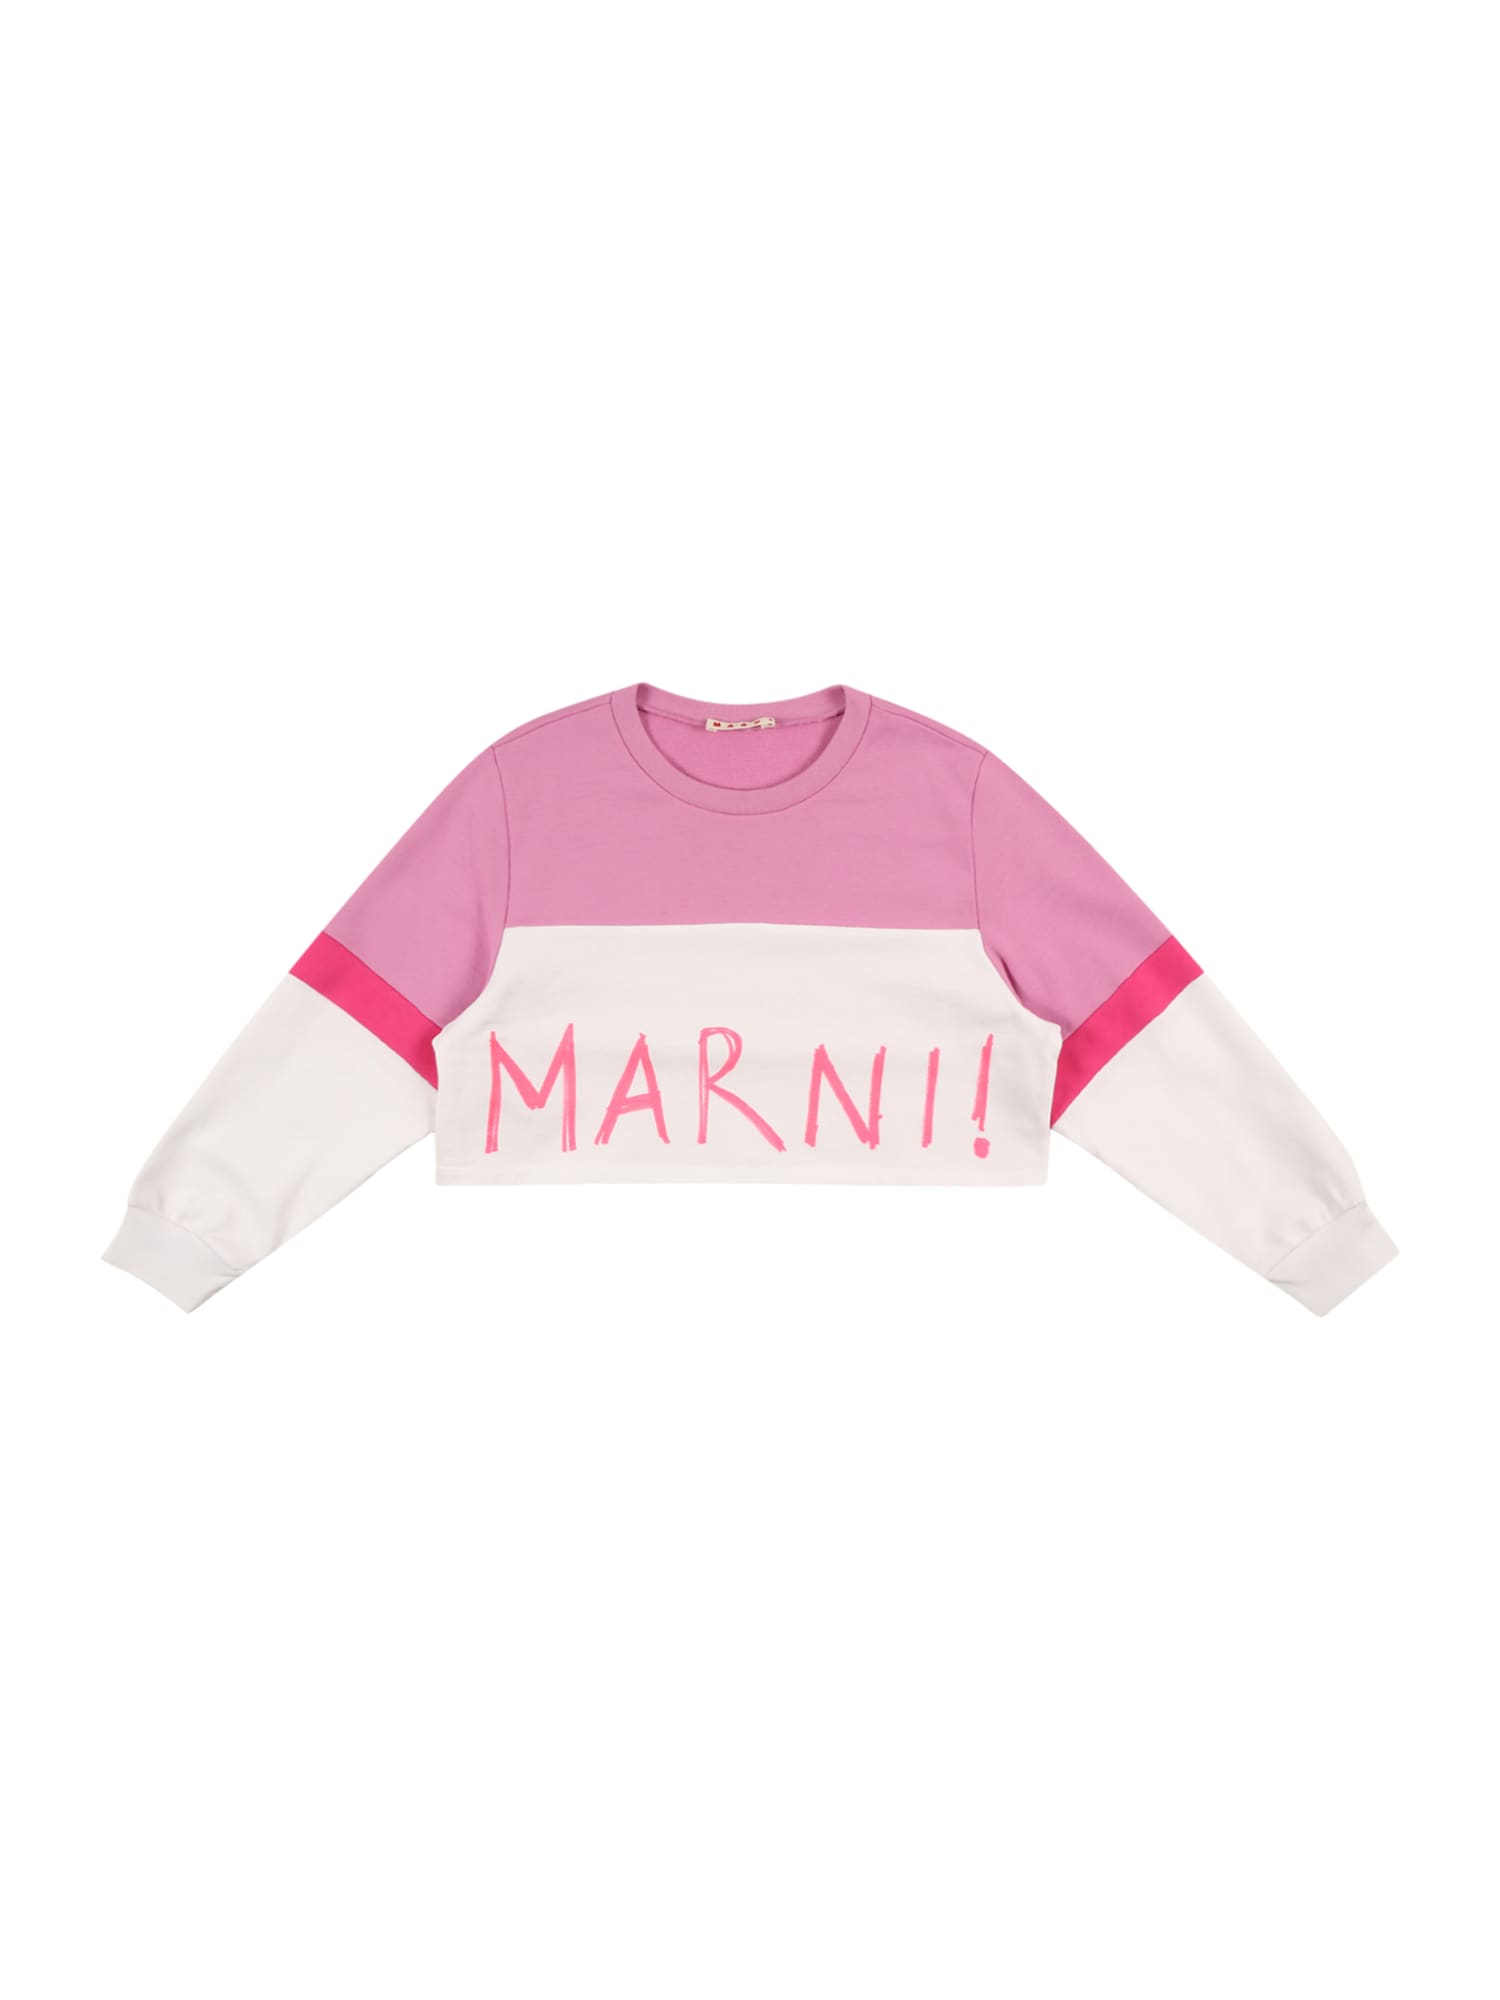 Marni Sweatshirt balta / pitajų spalva / rožinė